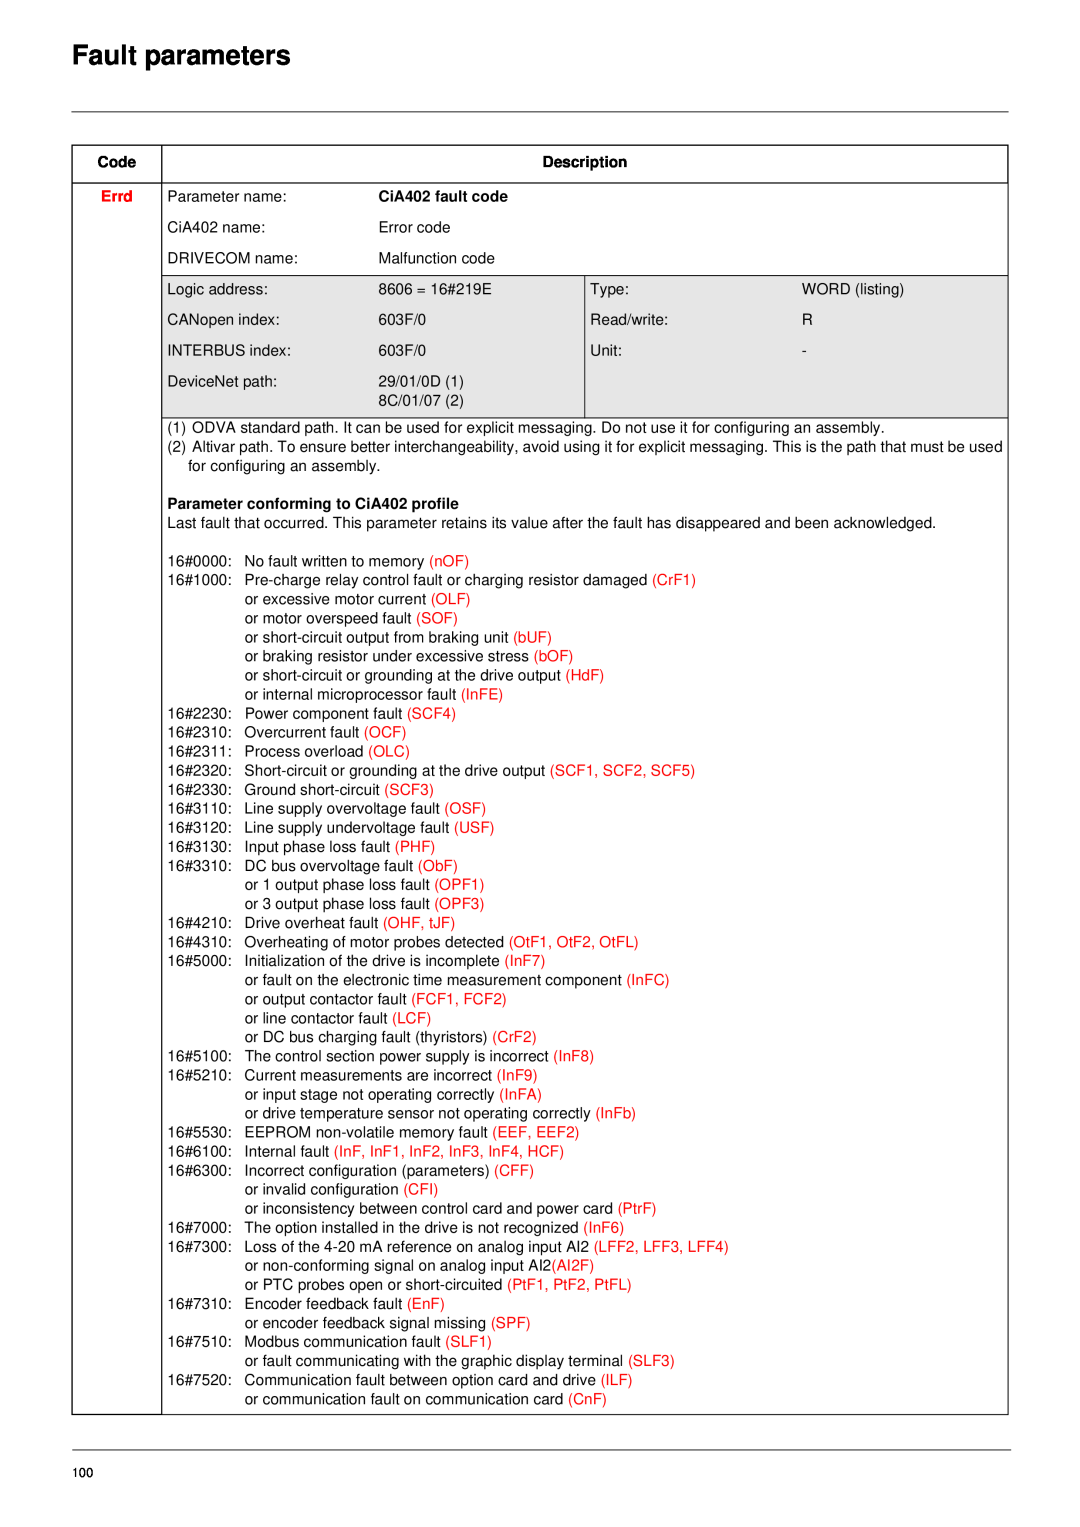 Schneider Electric 61 Fault parameters, Description, Errd, CiA402 fault code, Parameter conforming to CiA402 profile 